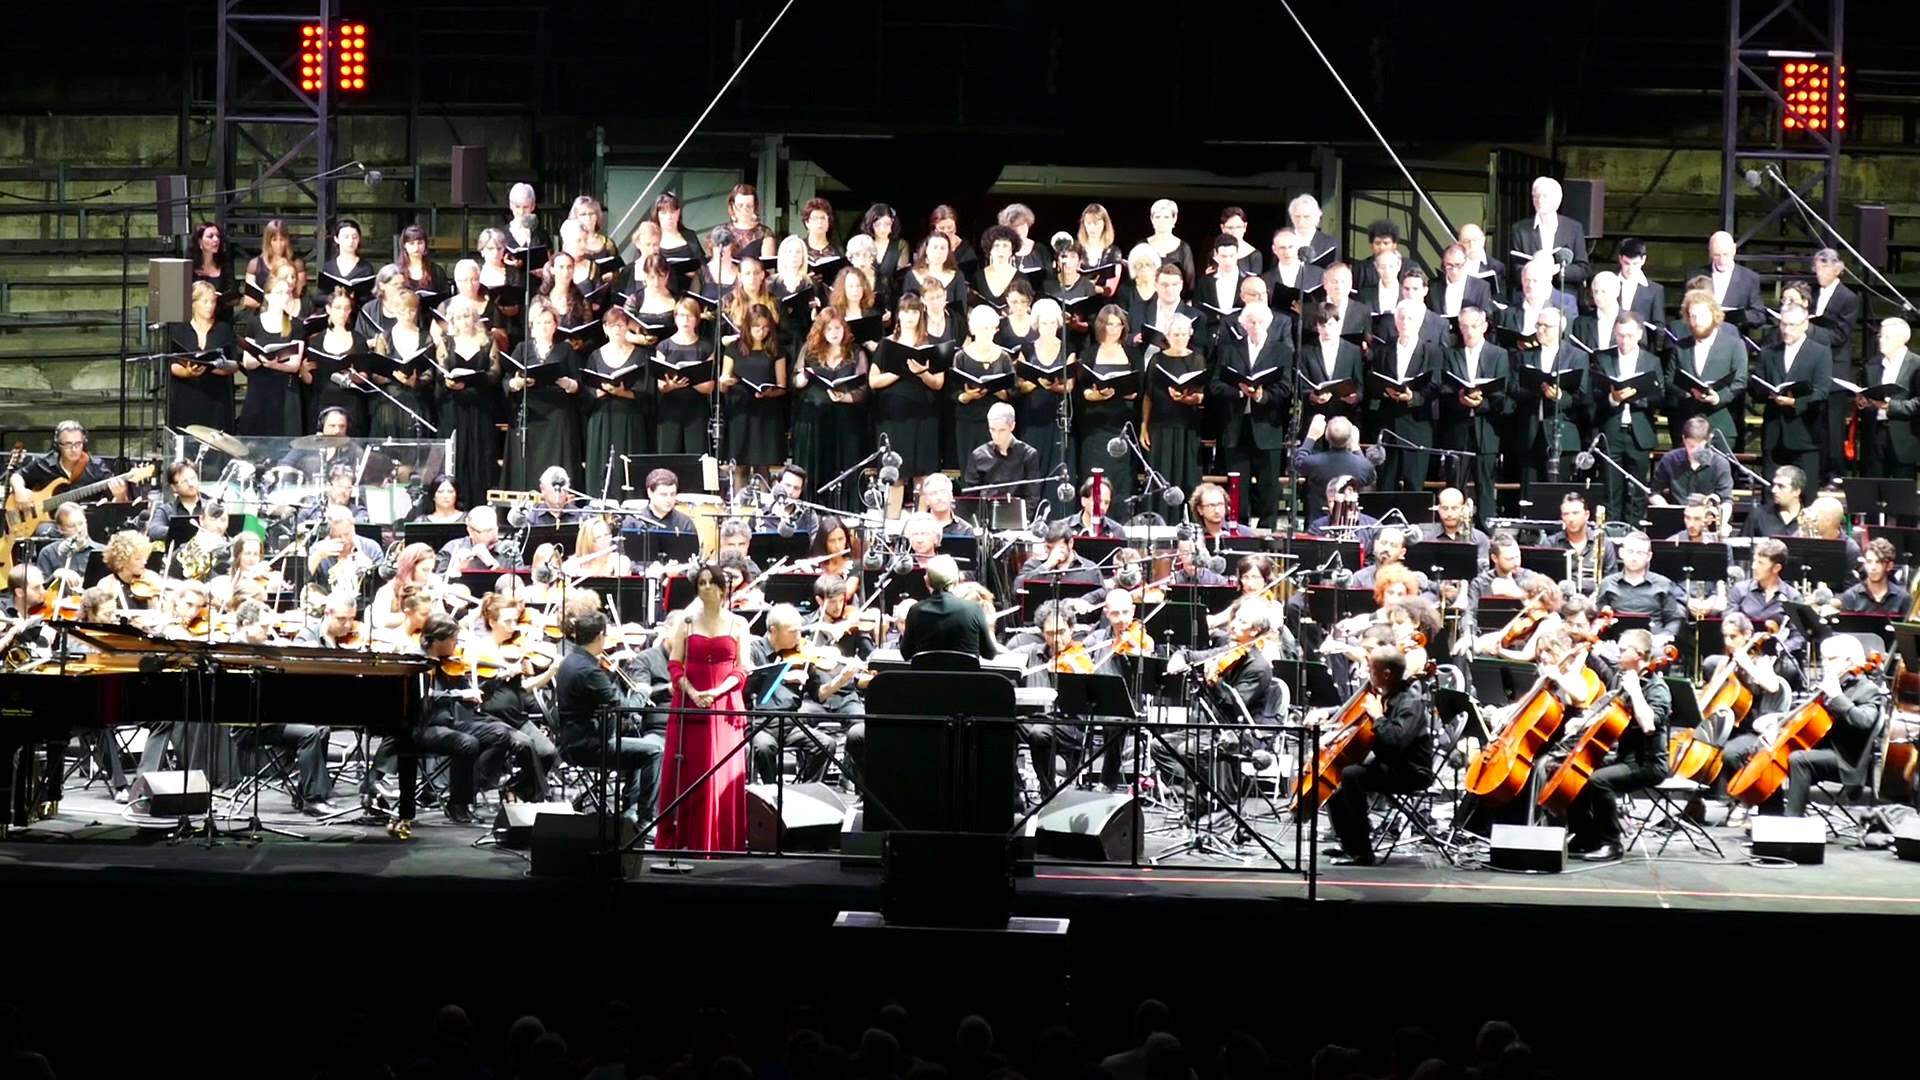 Ennio Morricone with Choeur Symphonique 